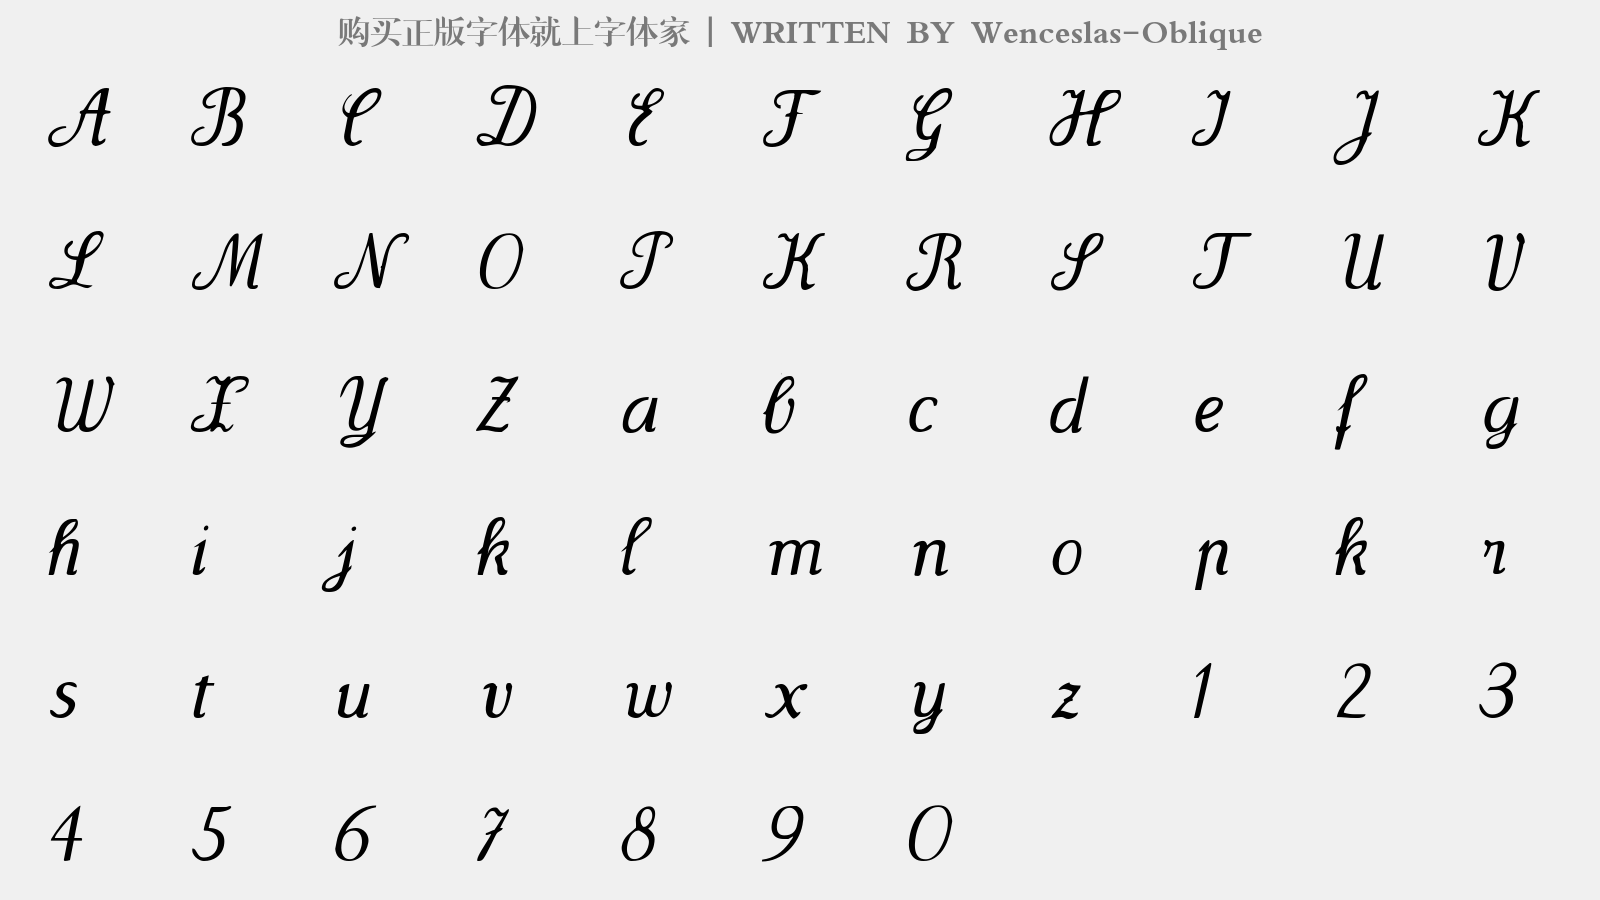 Wenceslas-Oblique - 大写字母/小写字母/数字